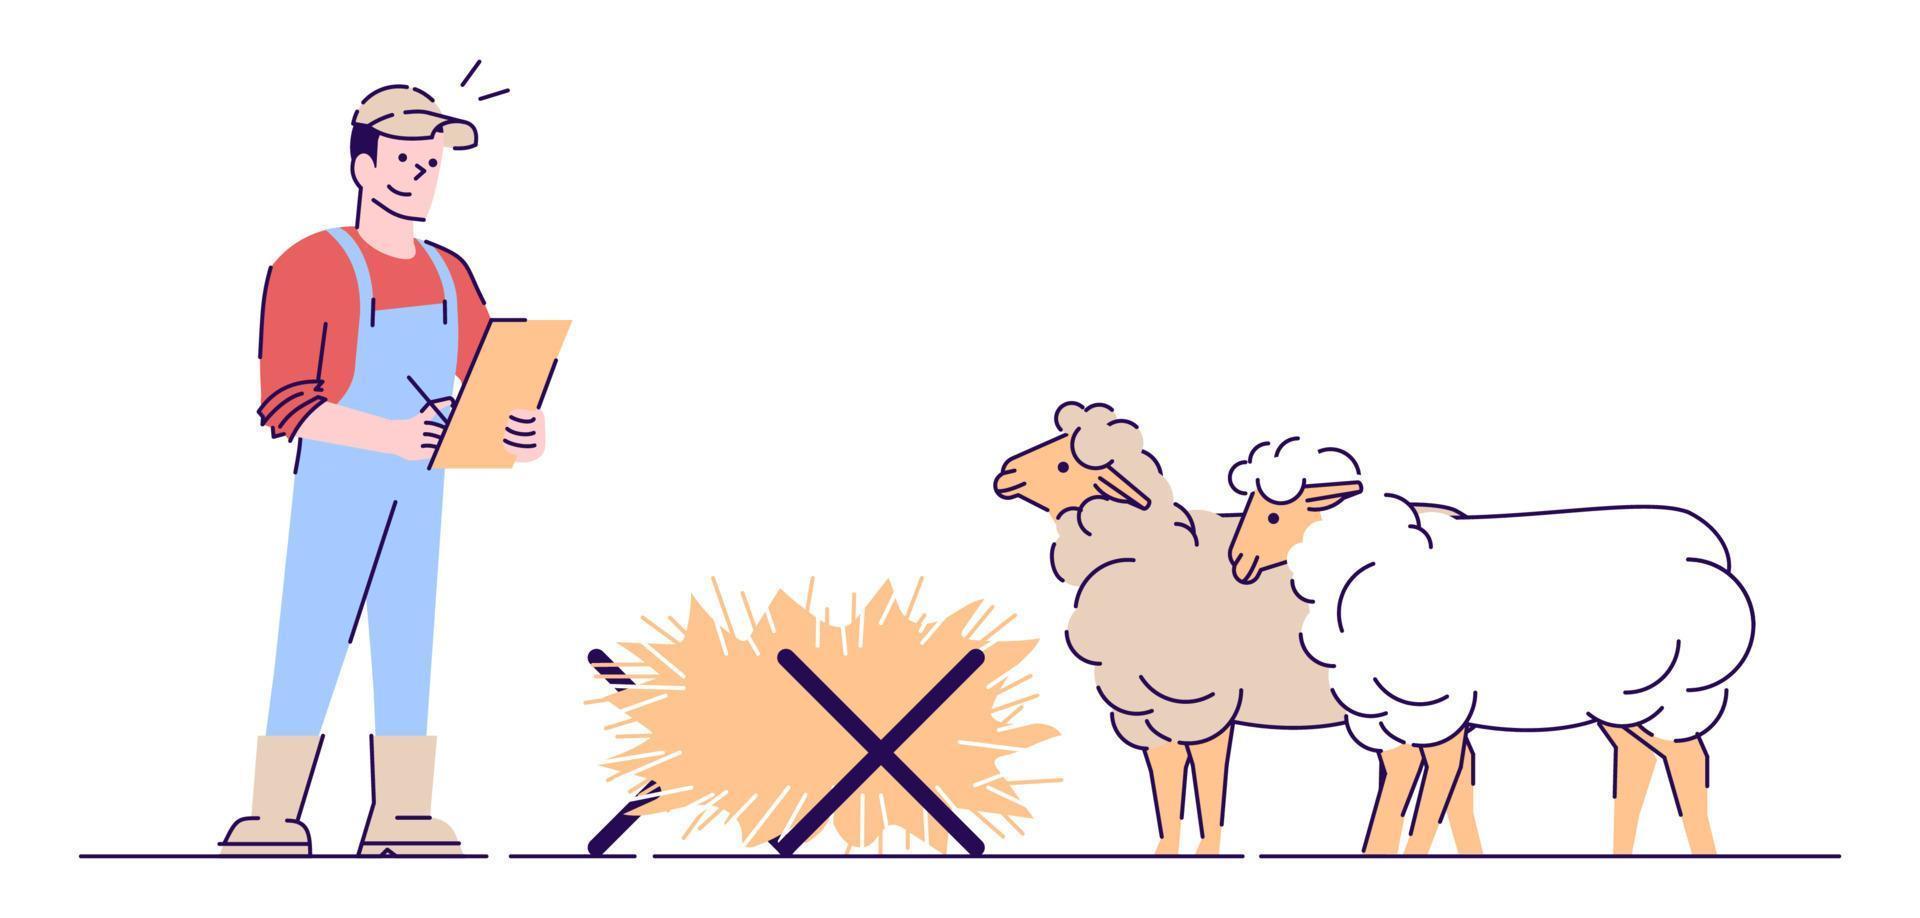 ilustração em vetor plana de criação de ovelhas. agricultura pecuária, conceito isolado de pecuária. criação de ovelhas. agricultor masculino tomando notas personagem de desenho animado com contorno. alimentação e nutrição animal